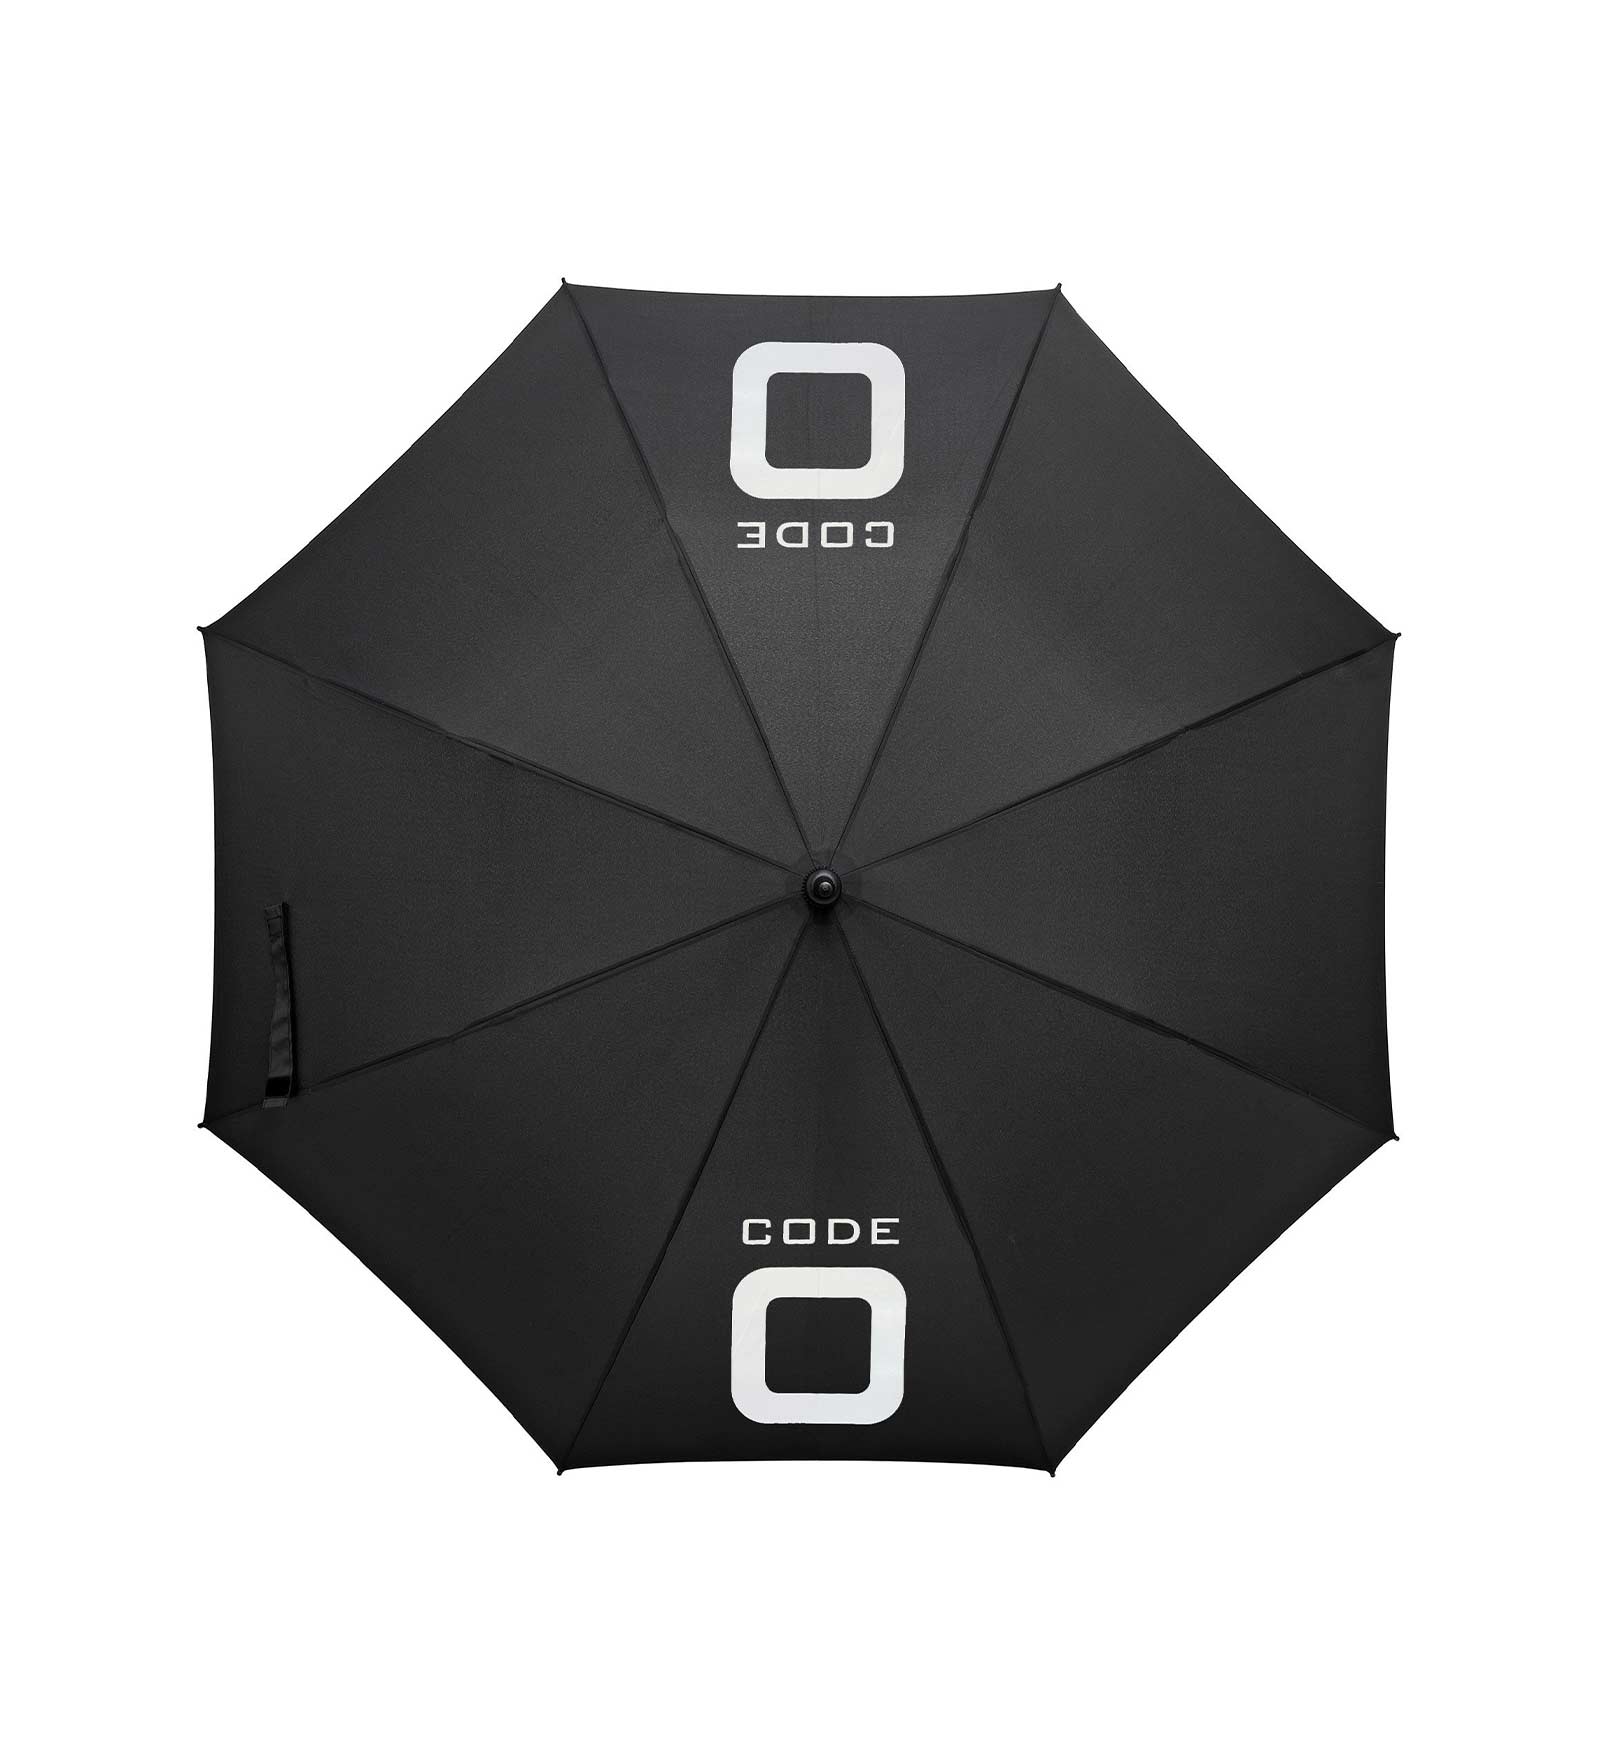 Large Black Umbrella